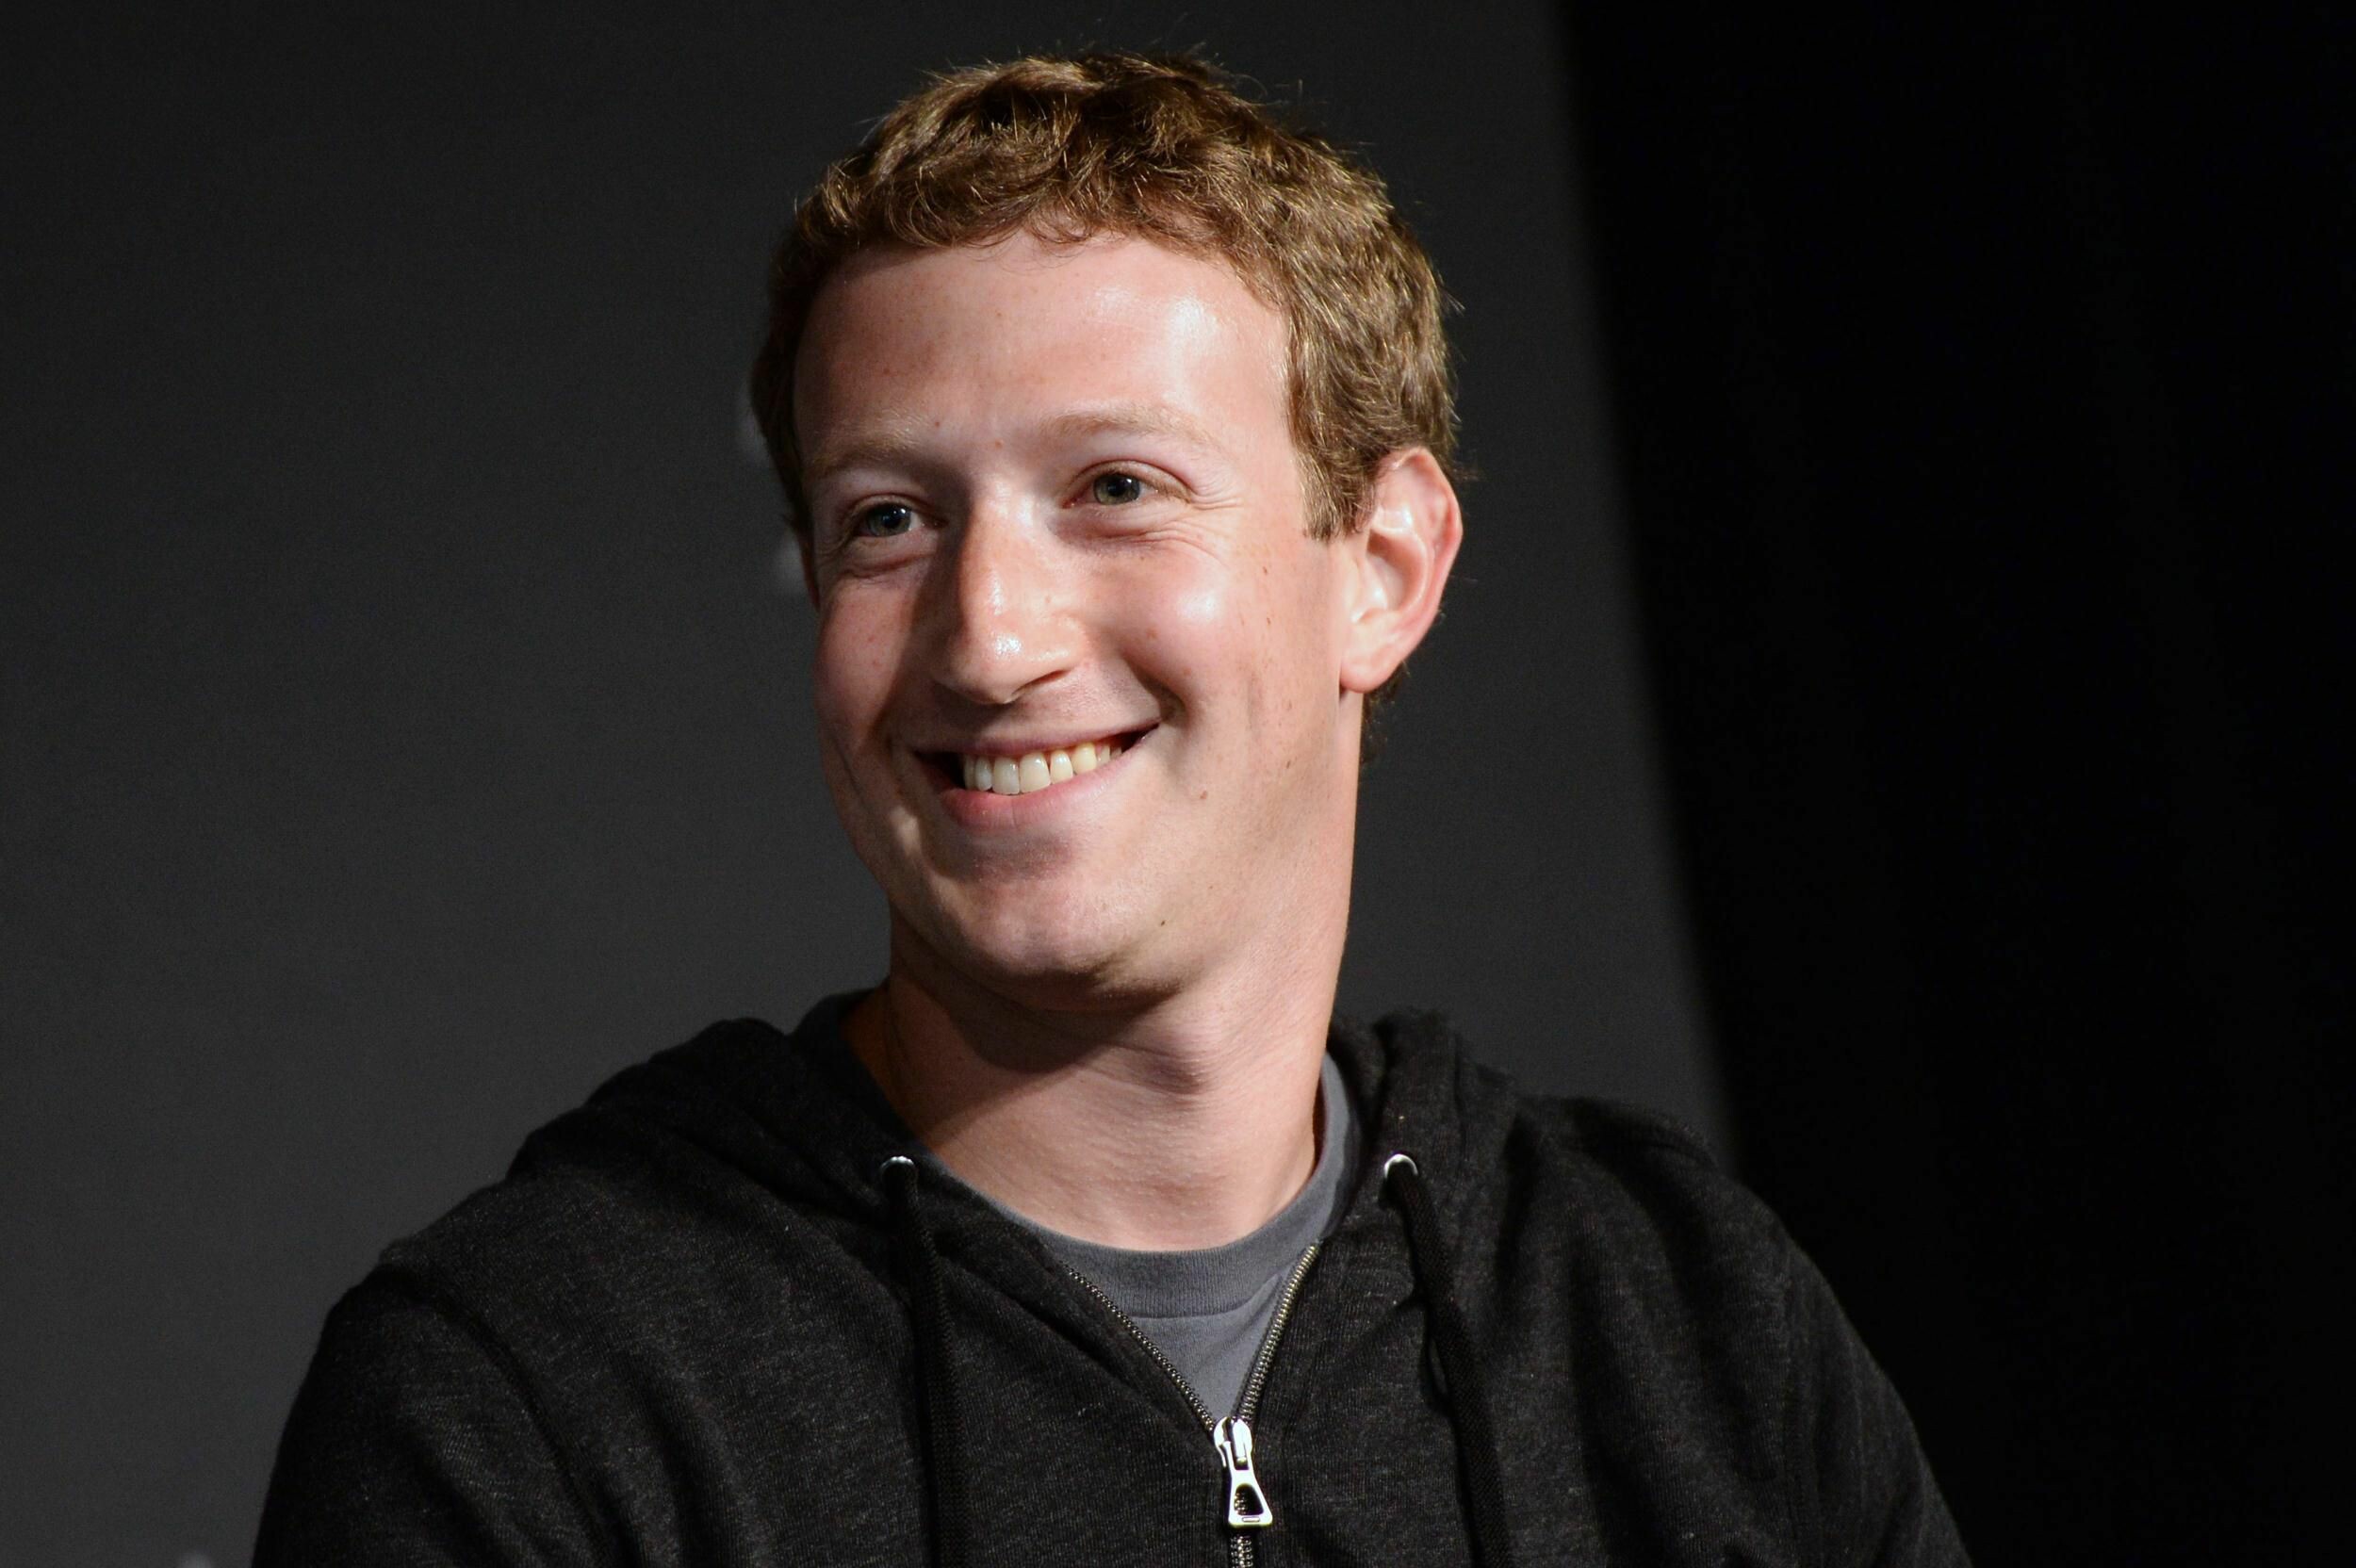 Mark Zuckerberg: A world-famous young tech entrepreneur, CEO of social media giant Facebook Inc.. 2500x1670 HD Wallpaper.